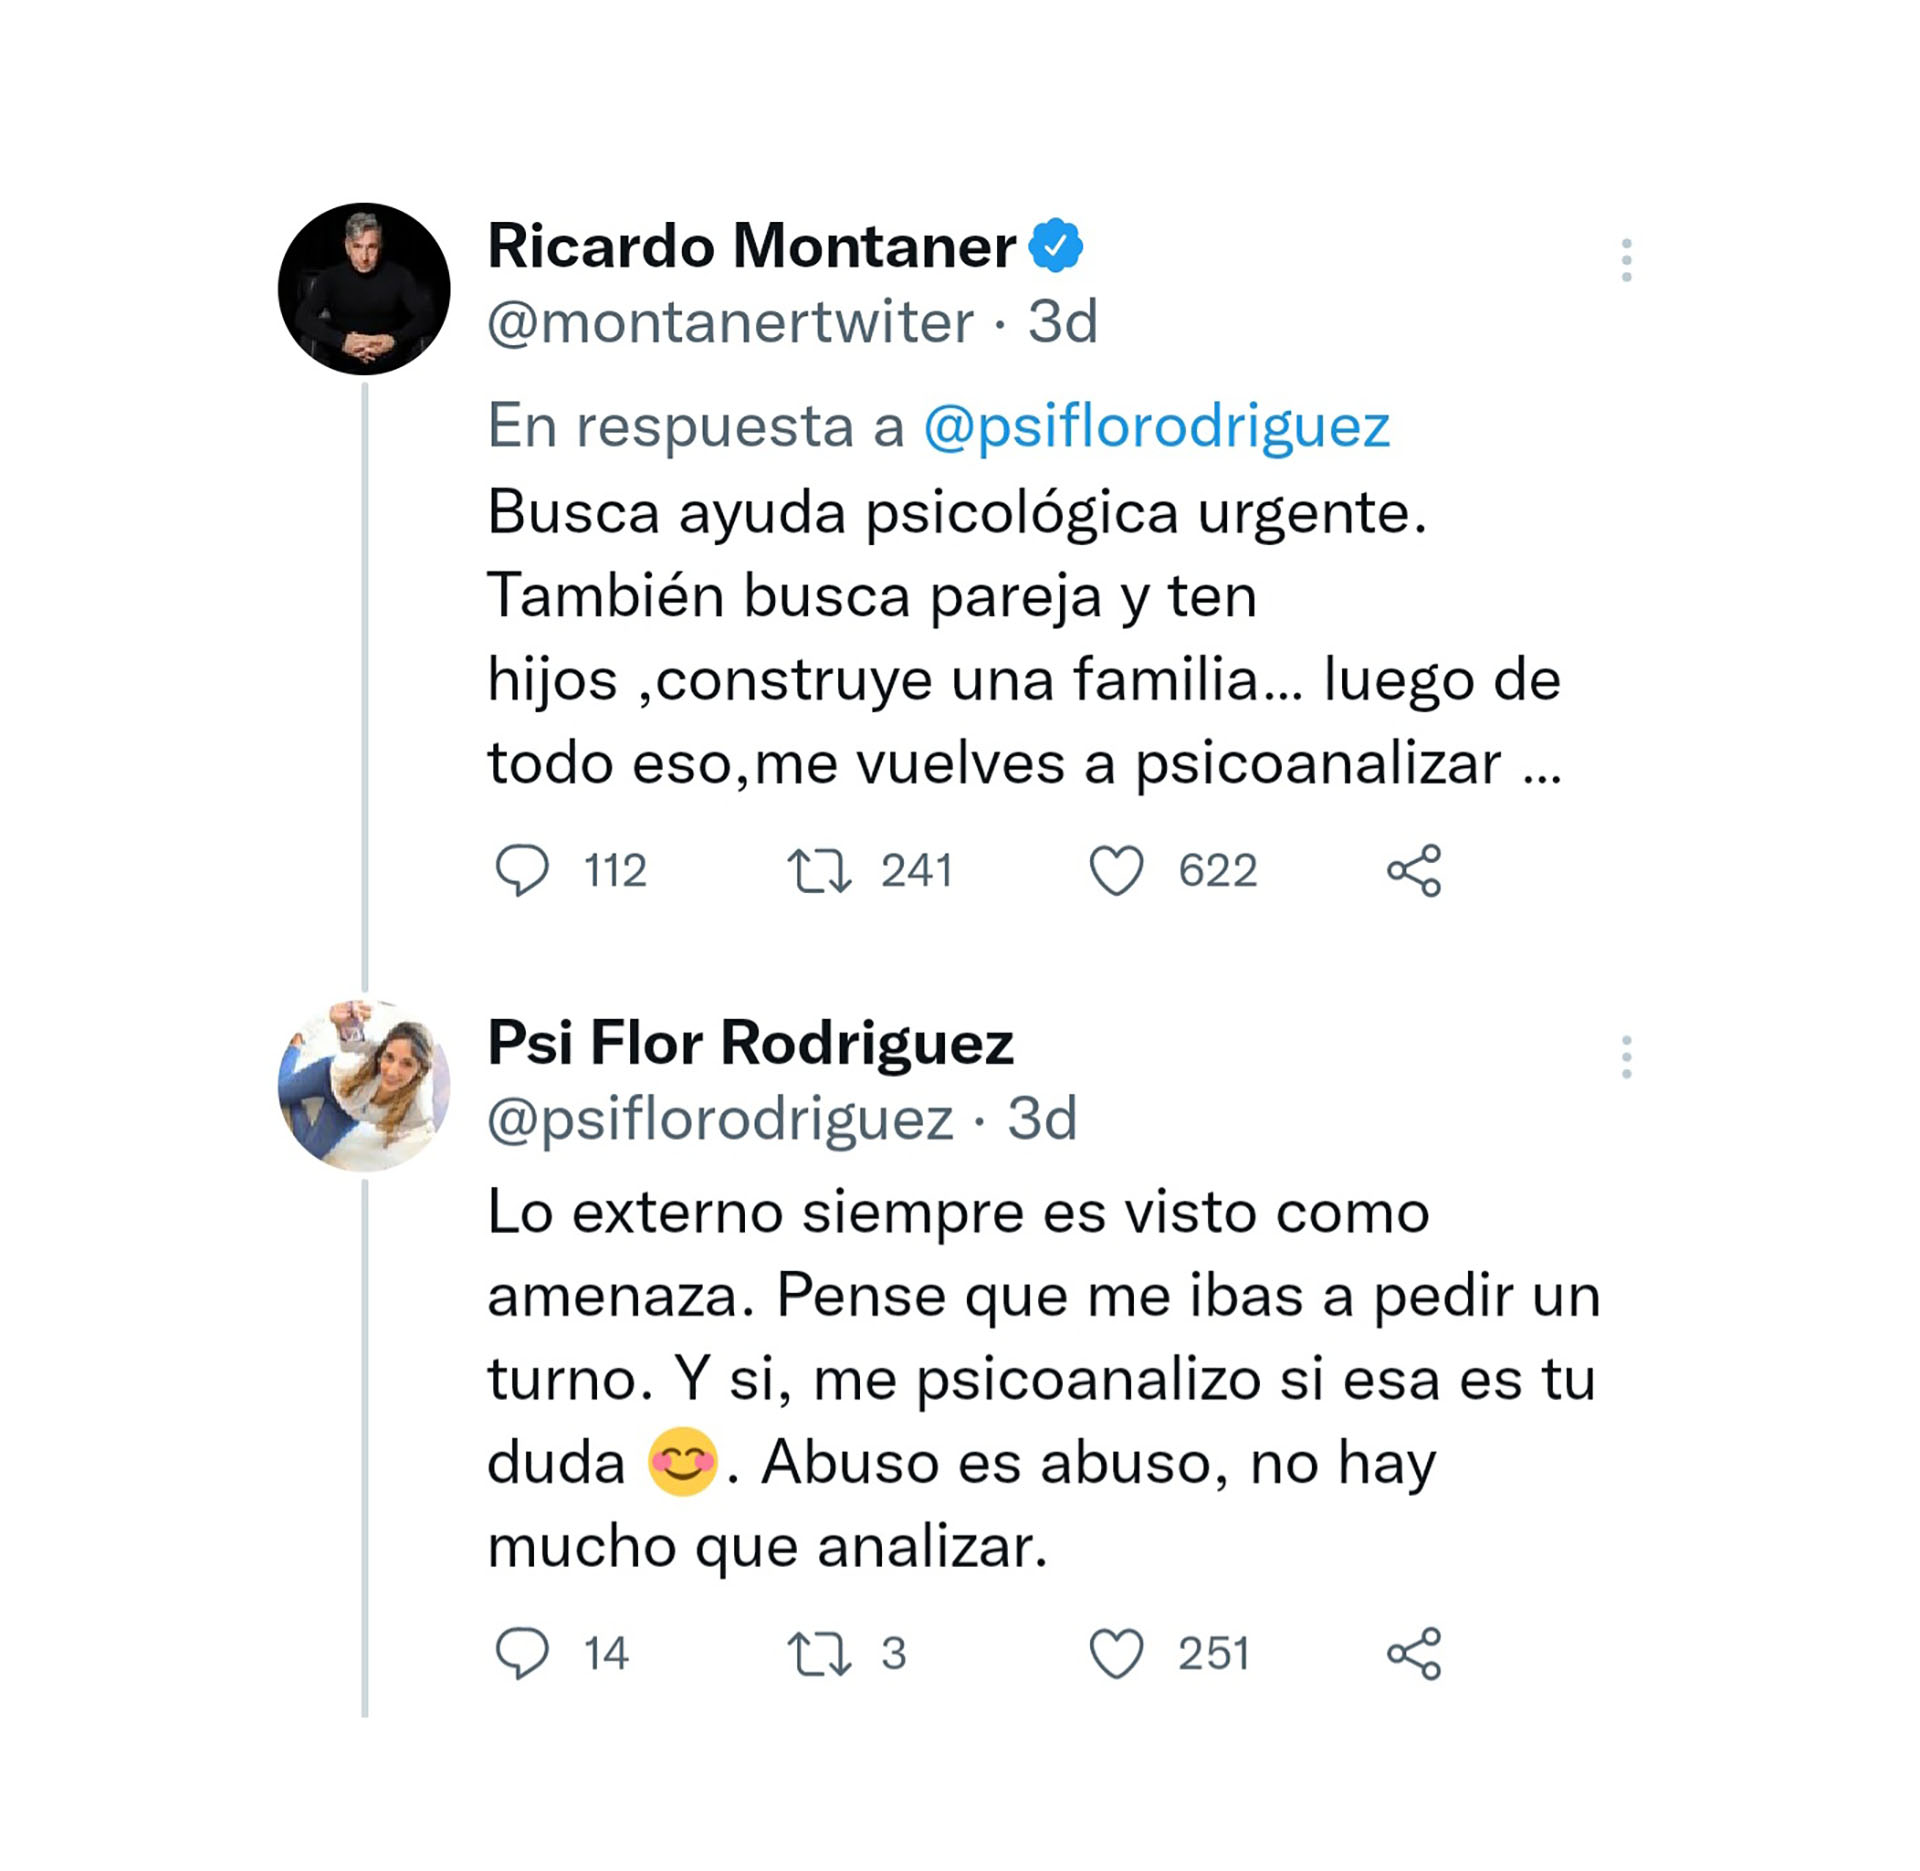 La respuesta de Ricardo Montaner